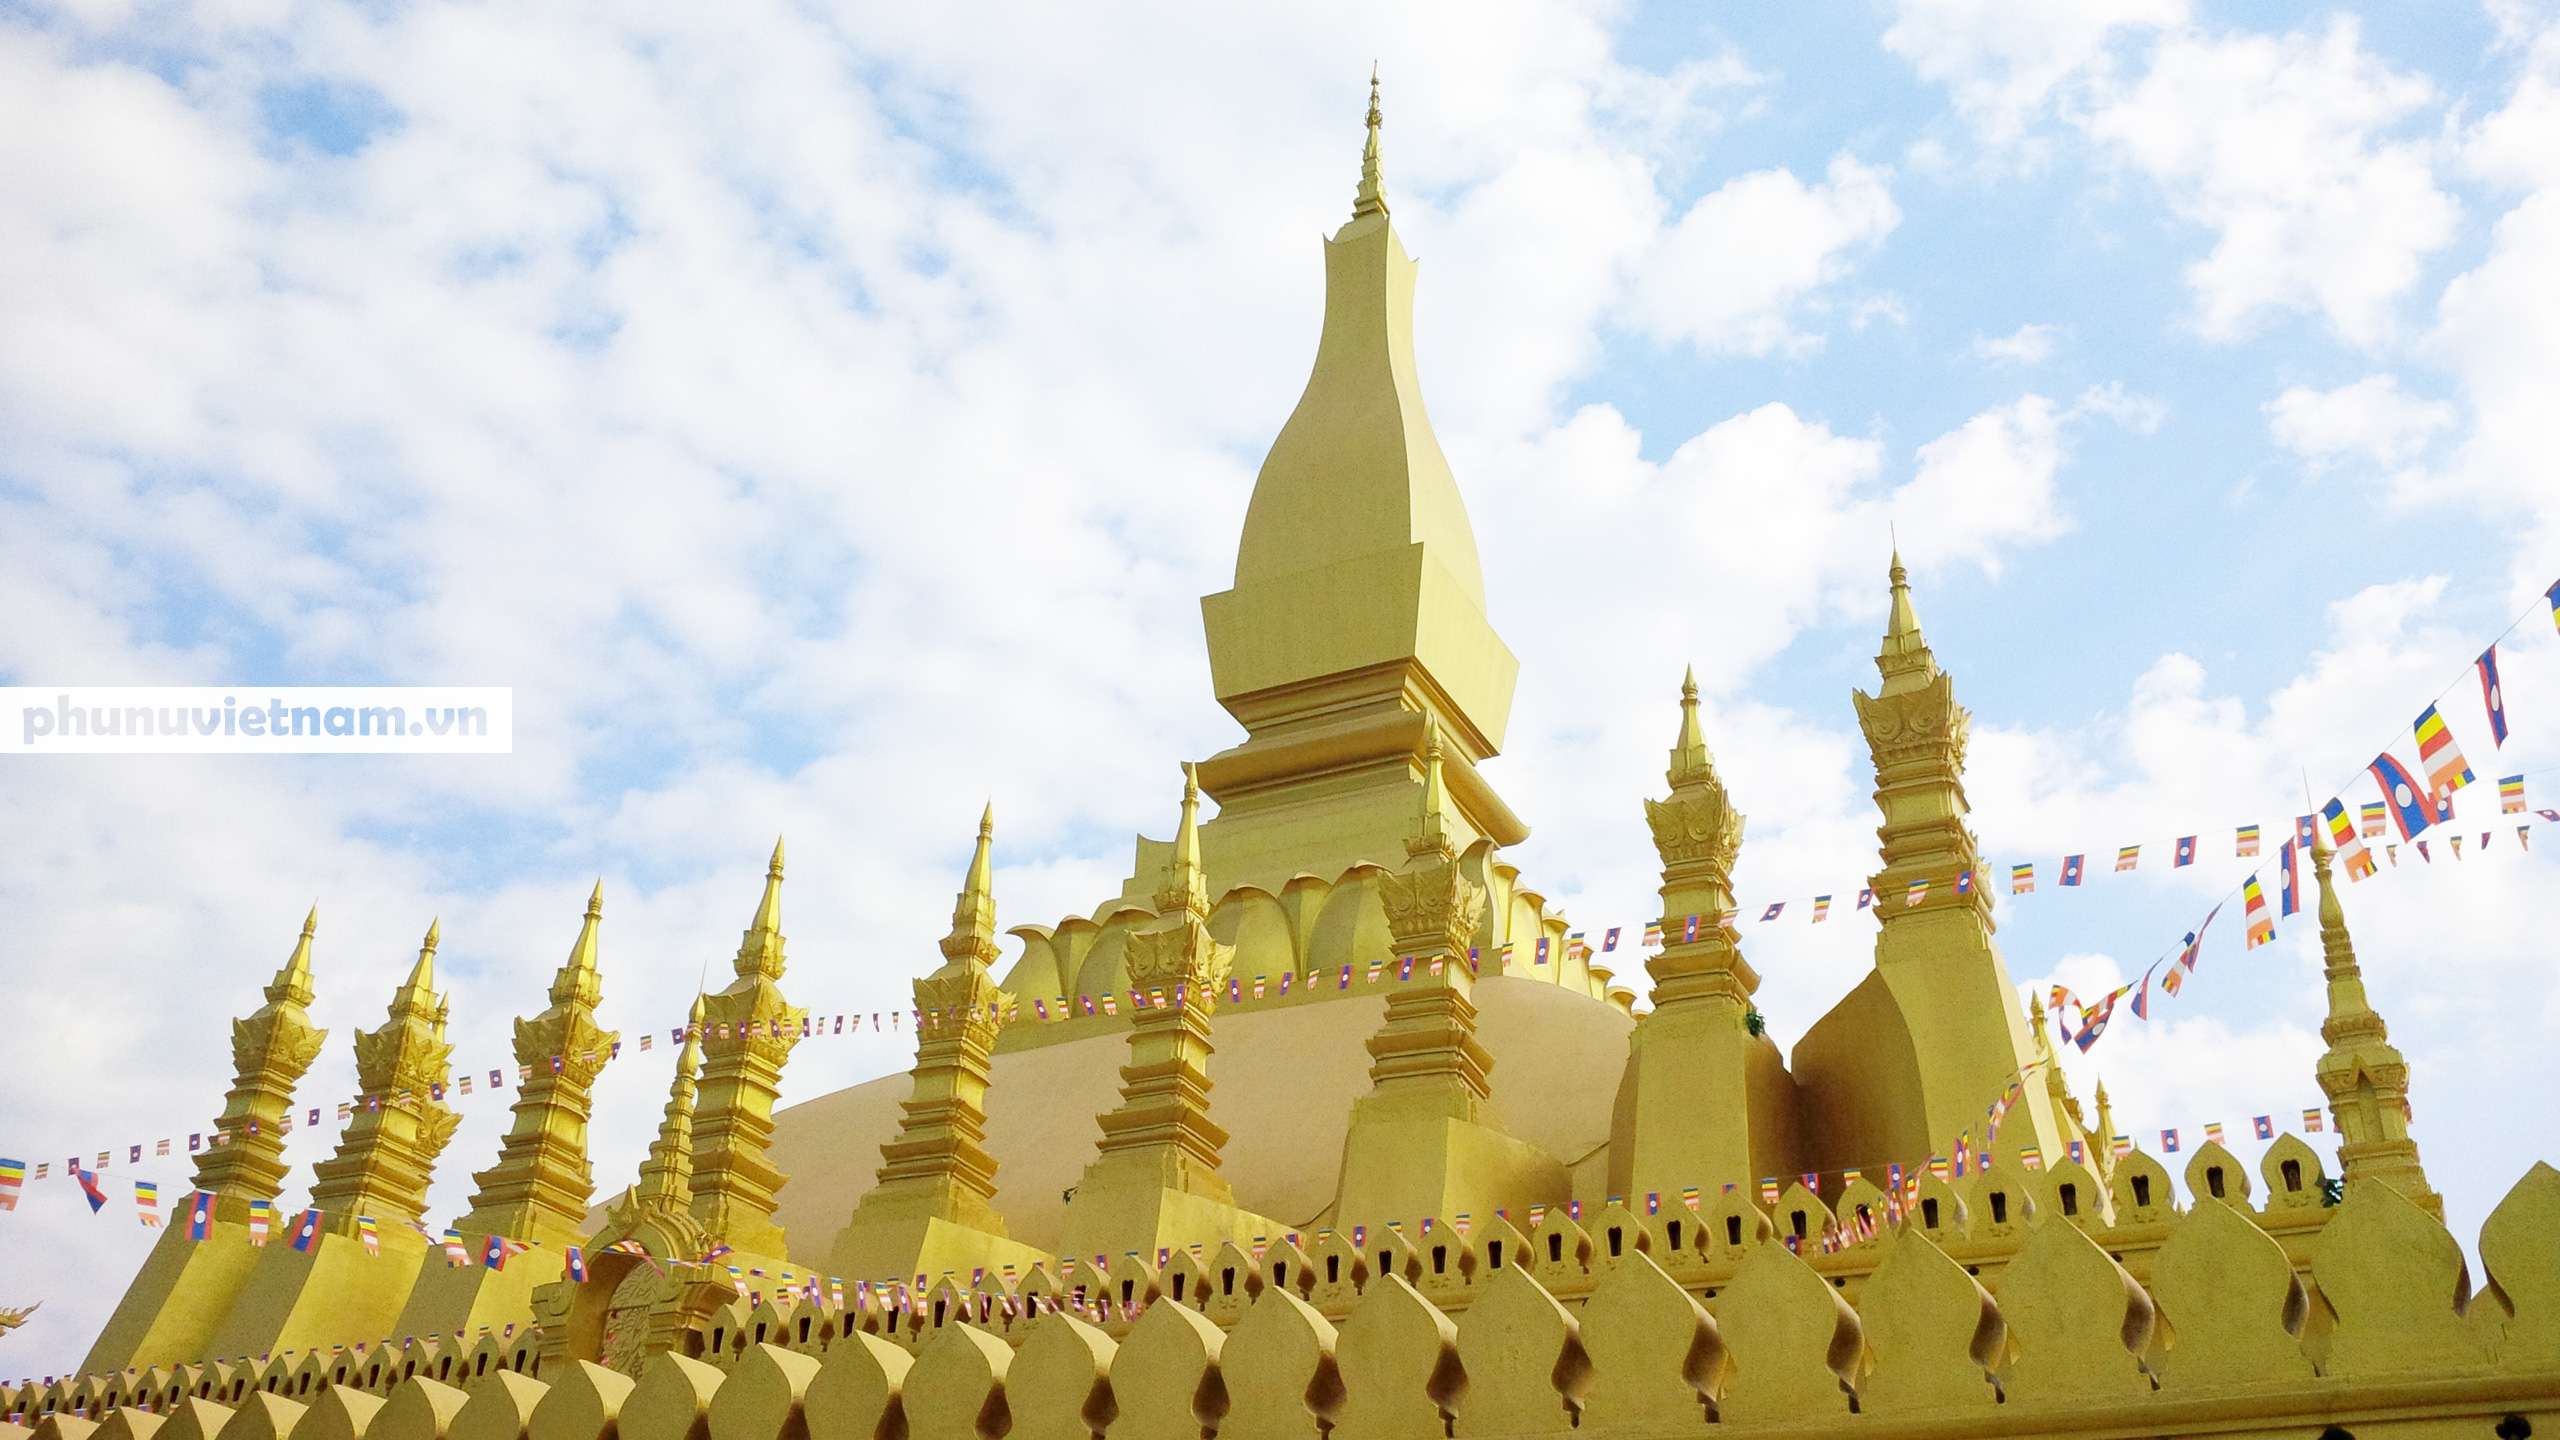 Chiêm ngưỡng ngôi tháp vàng lớn nhất của Lào, gần 500 tuổi tráng lệ giữa đất trời - Ảnh 5.